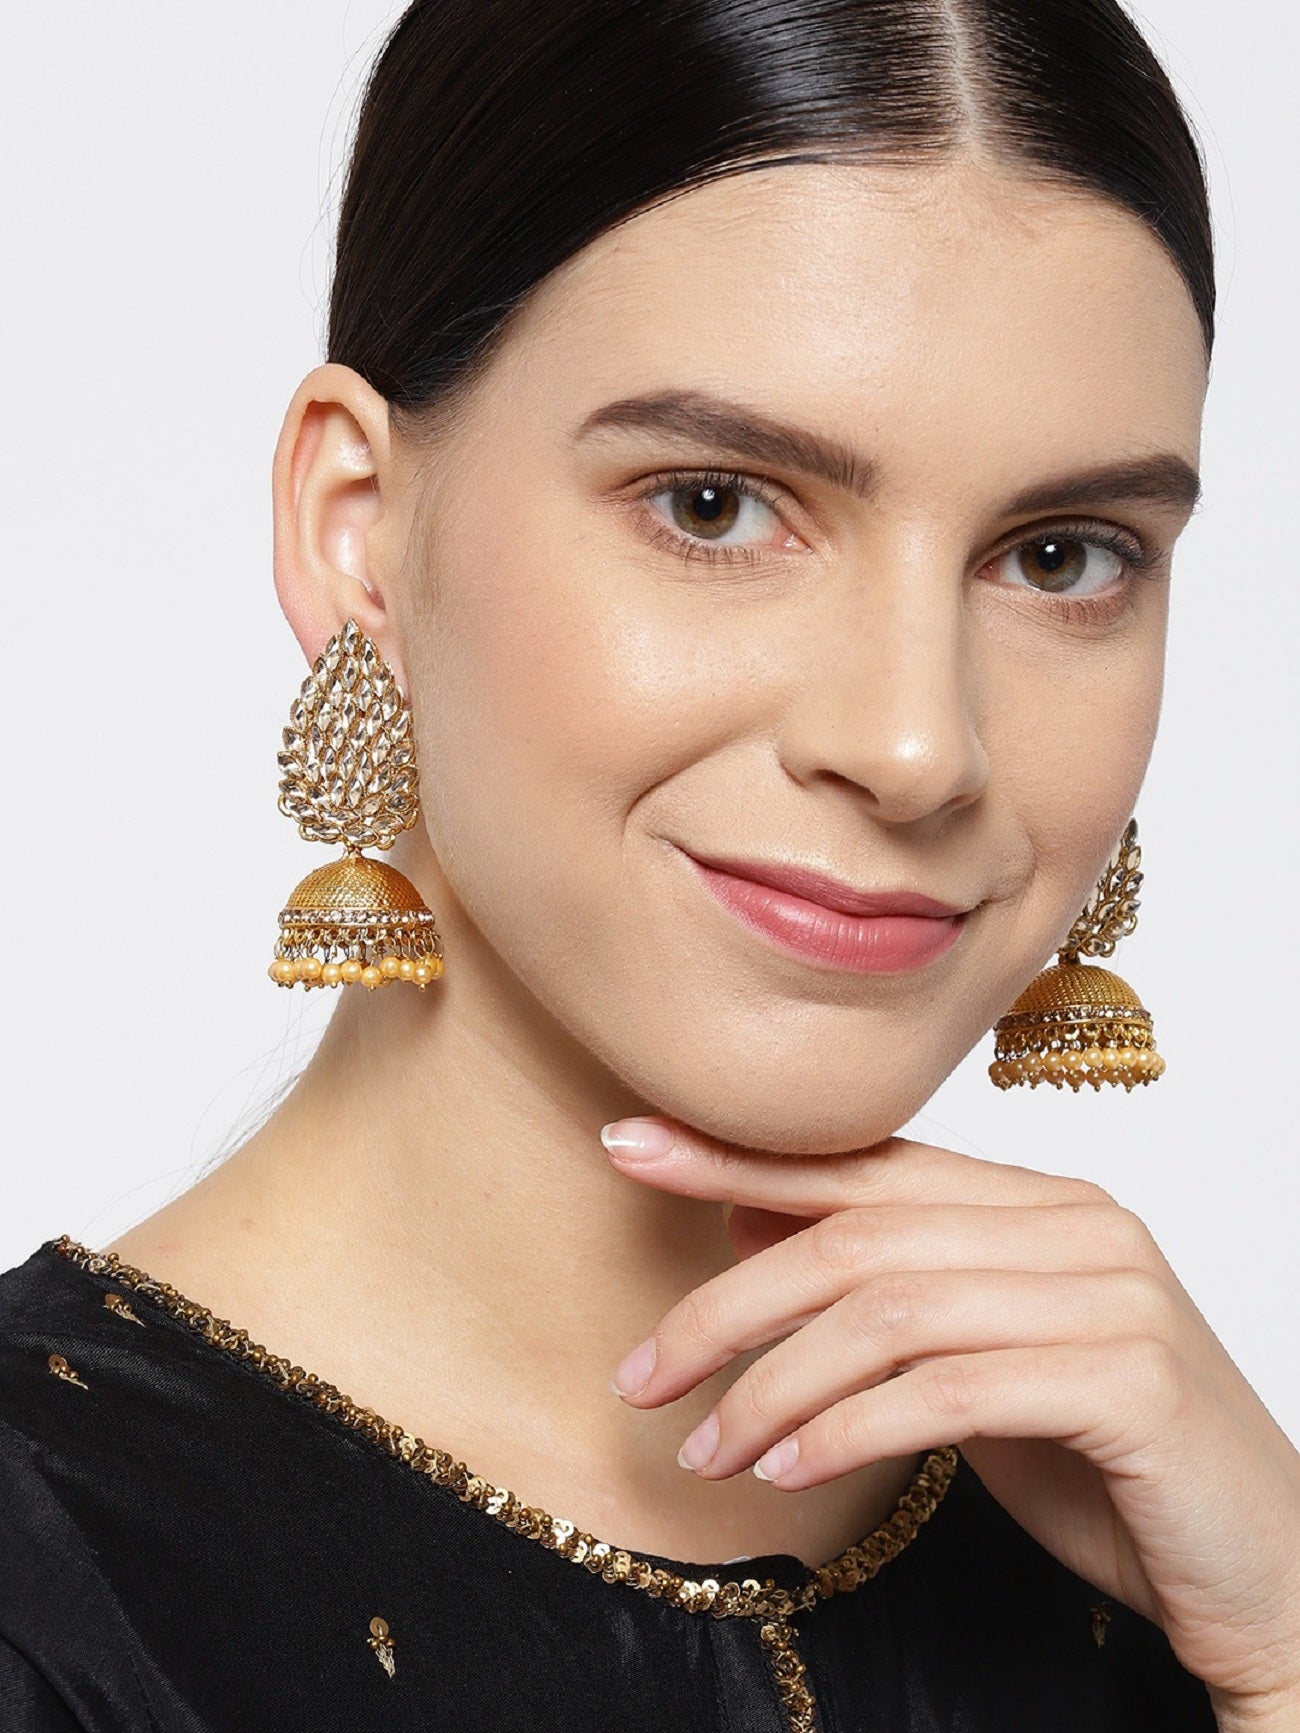 Buy Kercisbeauty Acrylic Gold Butterfly Earrings for Women Girls Laides  Gift Her Gold Jewelry Ear Dainty Drop Dangle Hoop Earrings (Yellow) at  Amazon.in